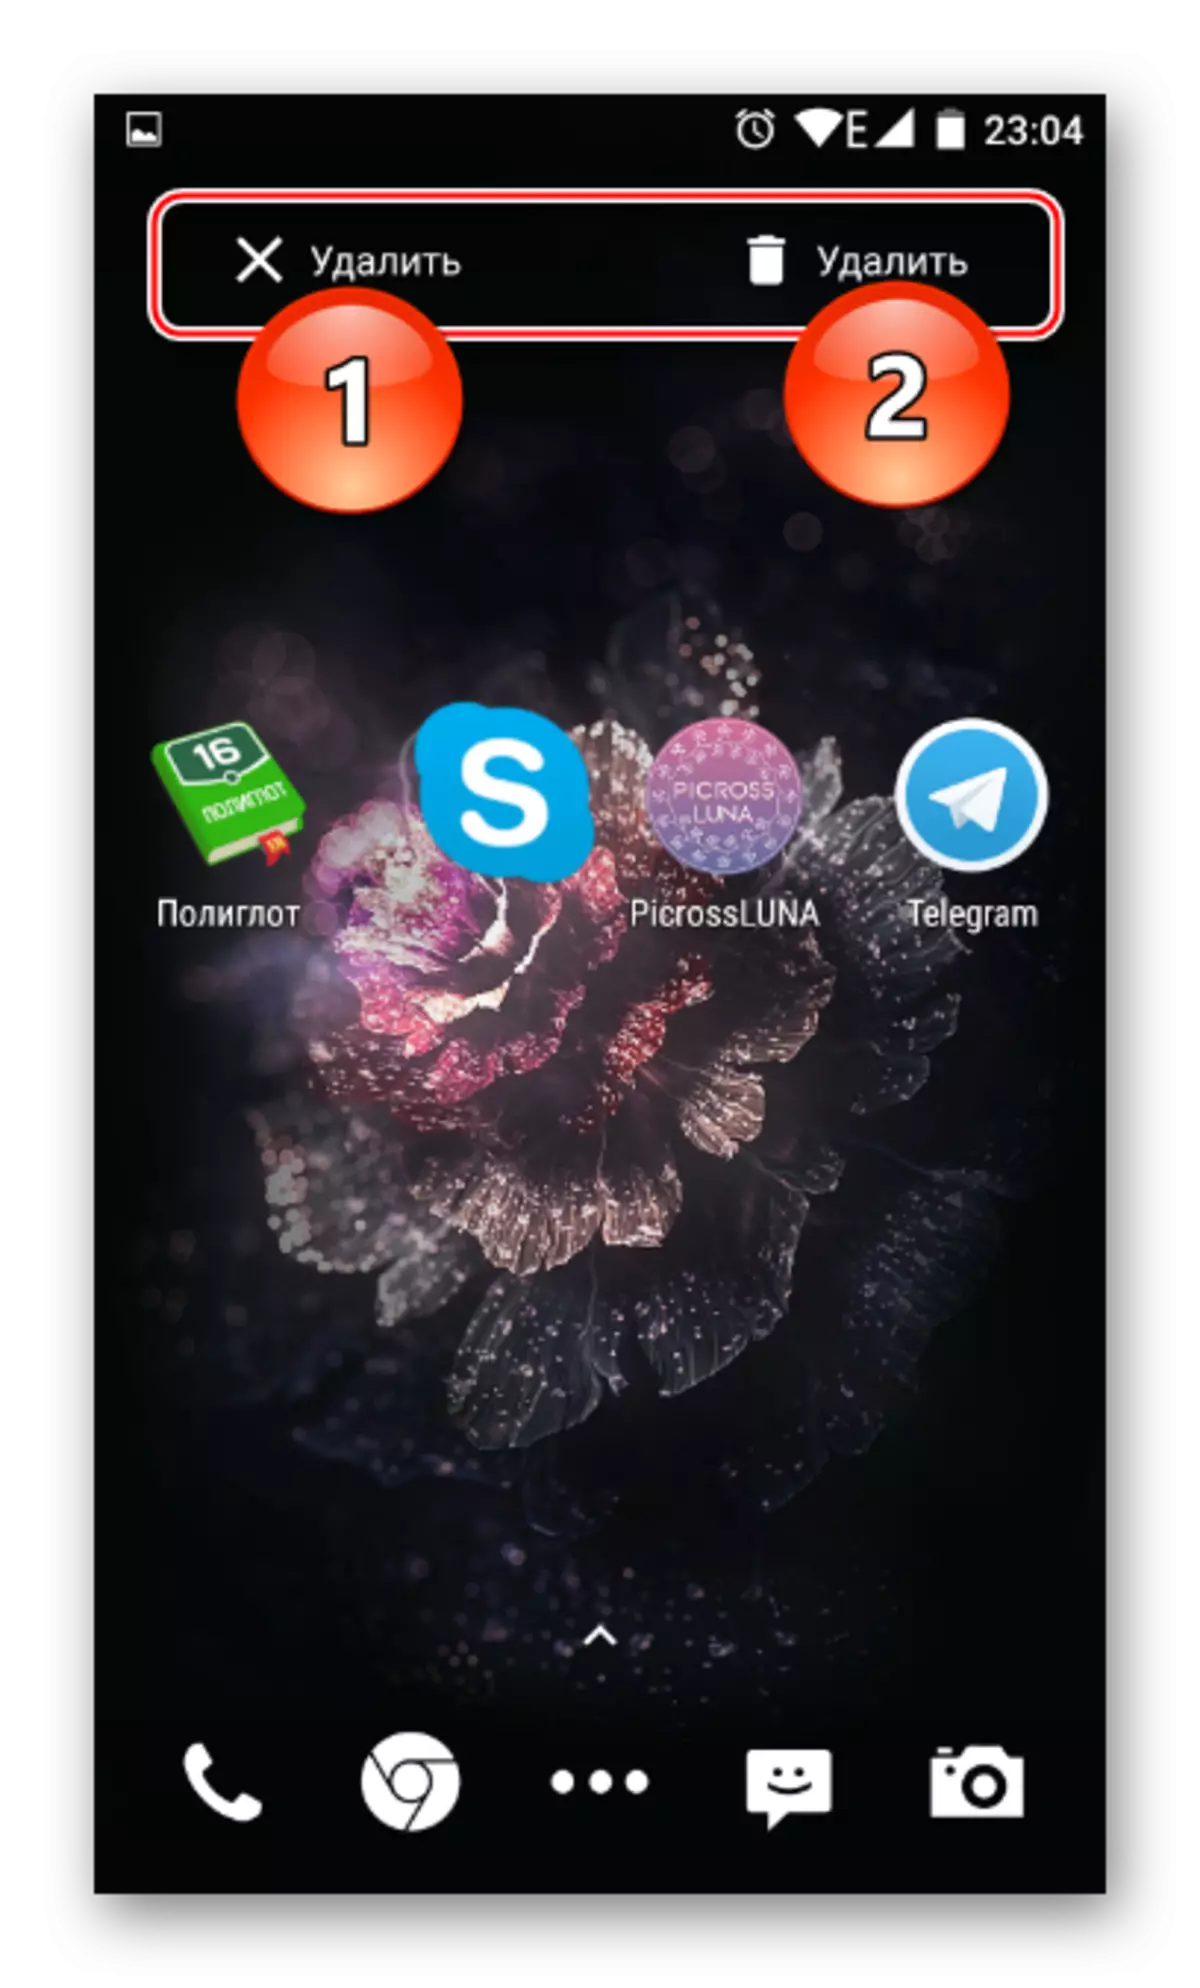 Android లో హోమ్ స్క్రీన్ ద్వారా ఒక అప్లికేషన్ను తొలగించడానికి వేస్